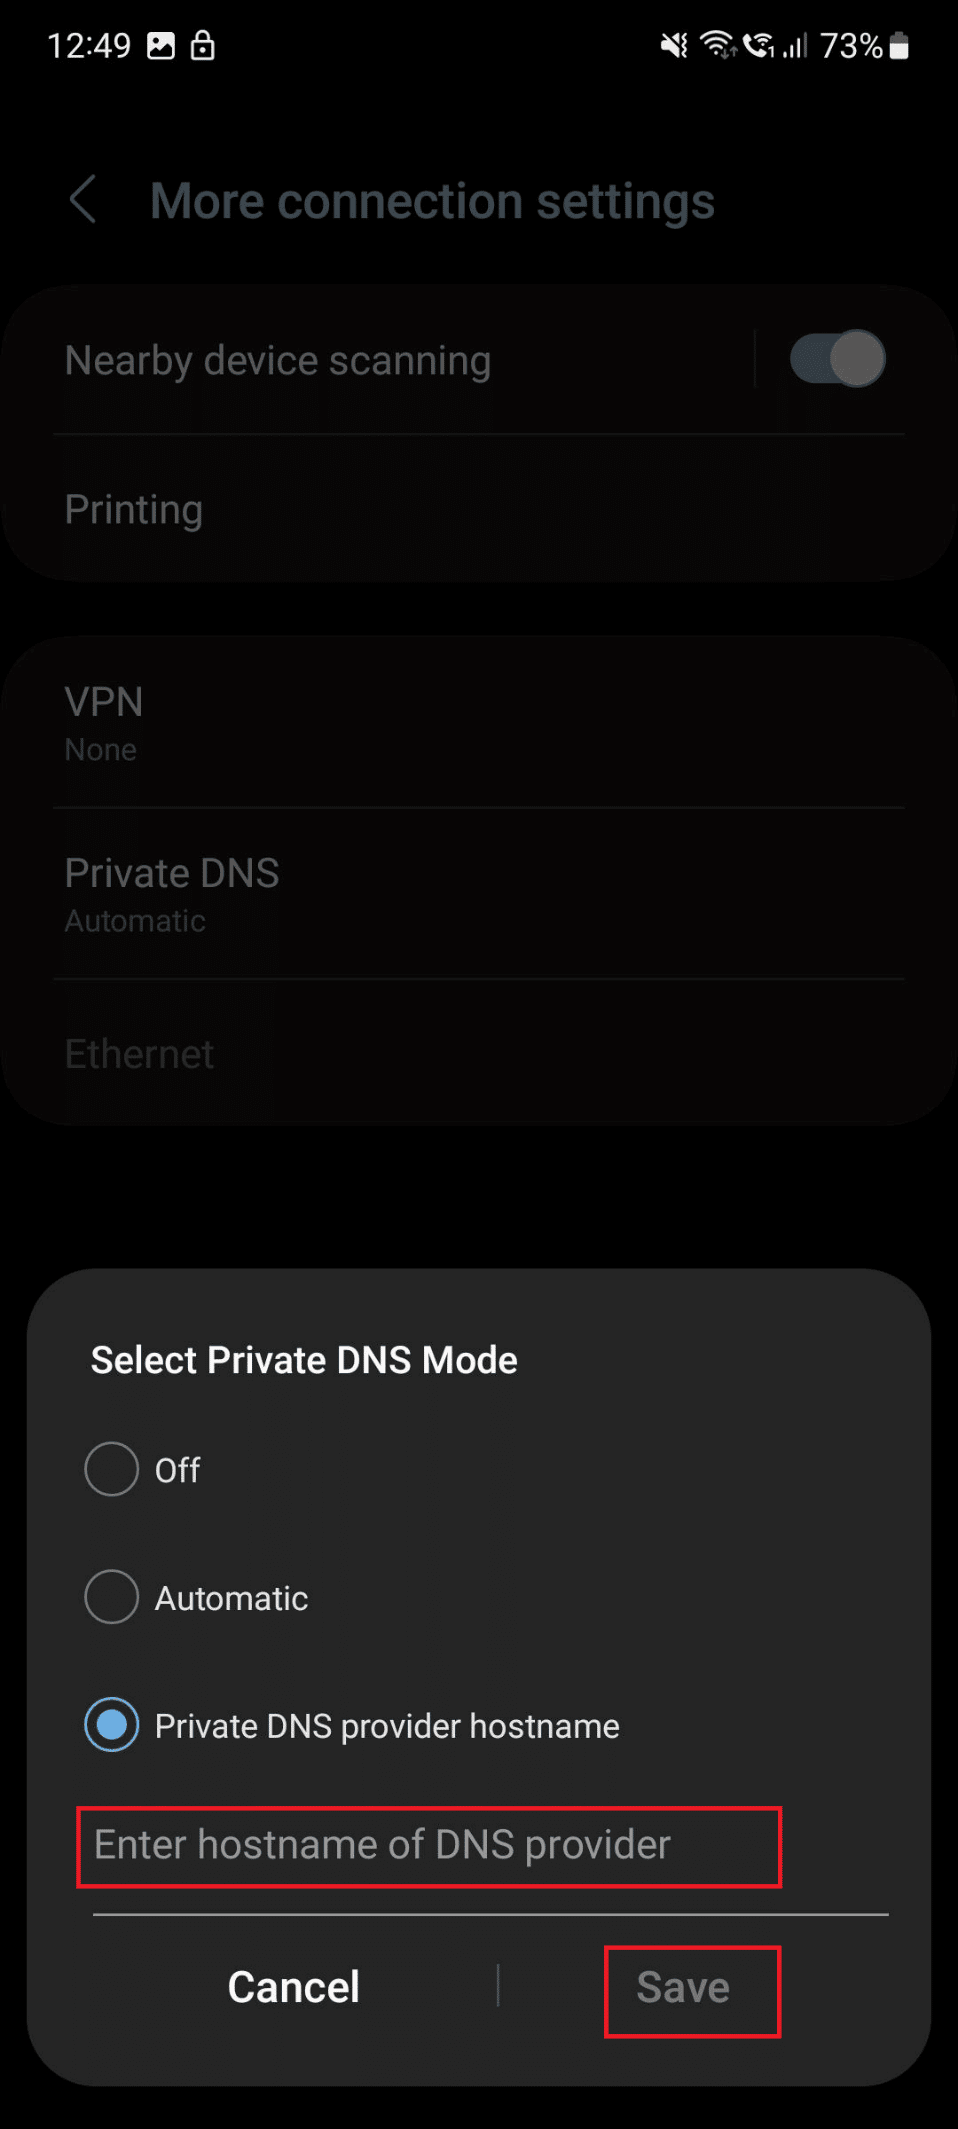 private DNS provider hostname